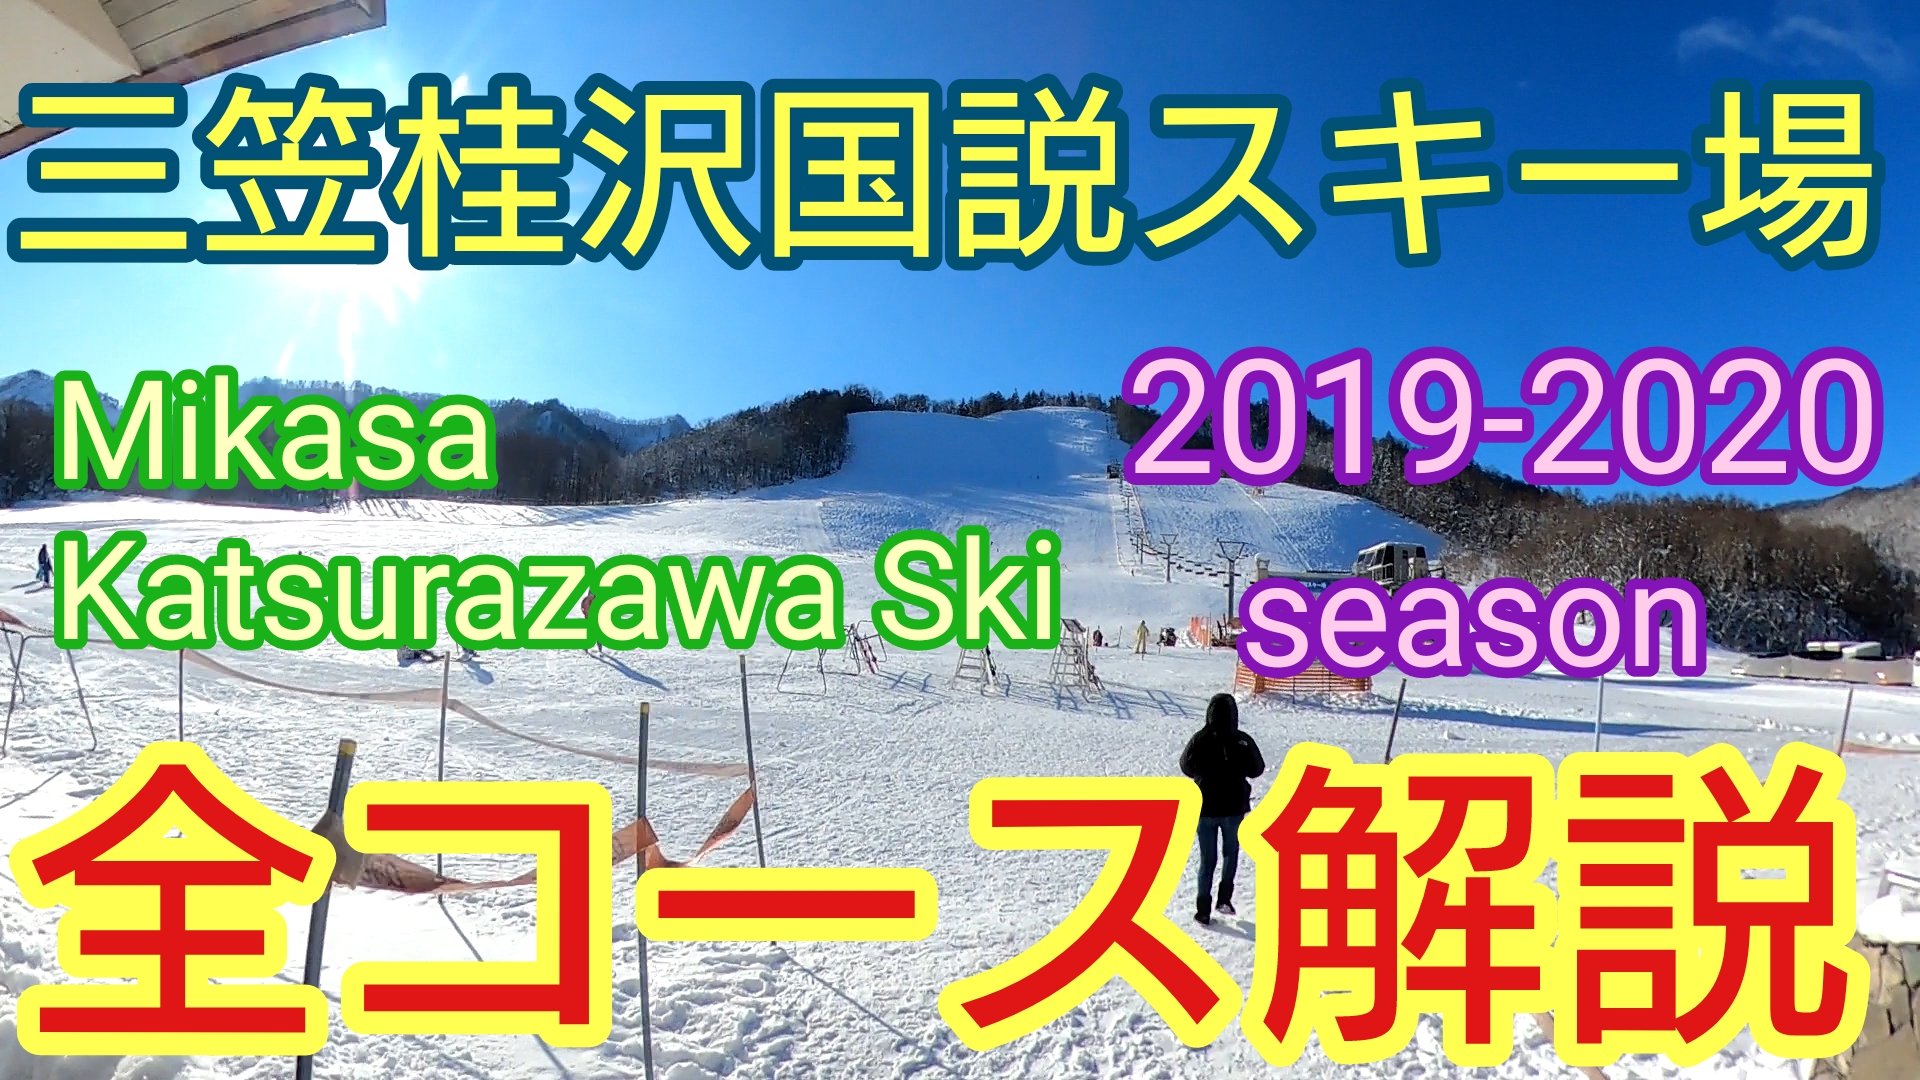 20192020シーズン(Season)三笠桂沢国設スキー場(MIKASA KATSURAZAWA KOKUSETSU SKI resort)のコースの雪質や積雪をブログで紹介!